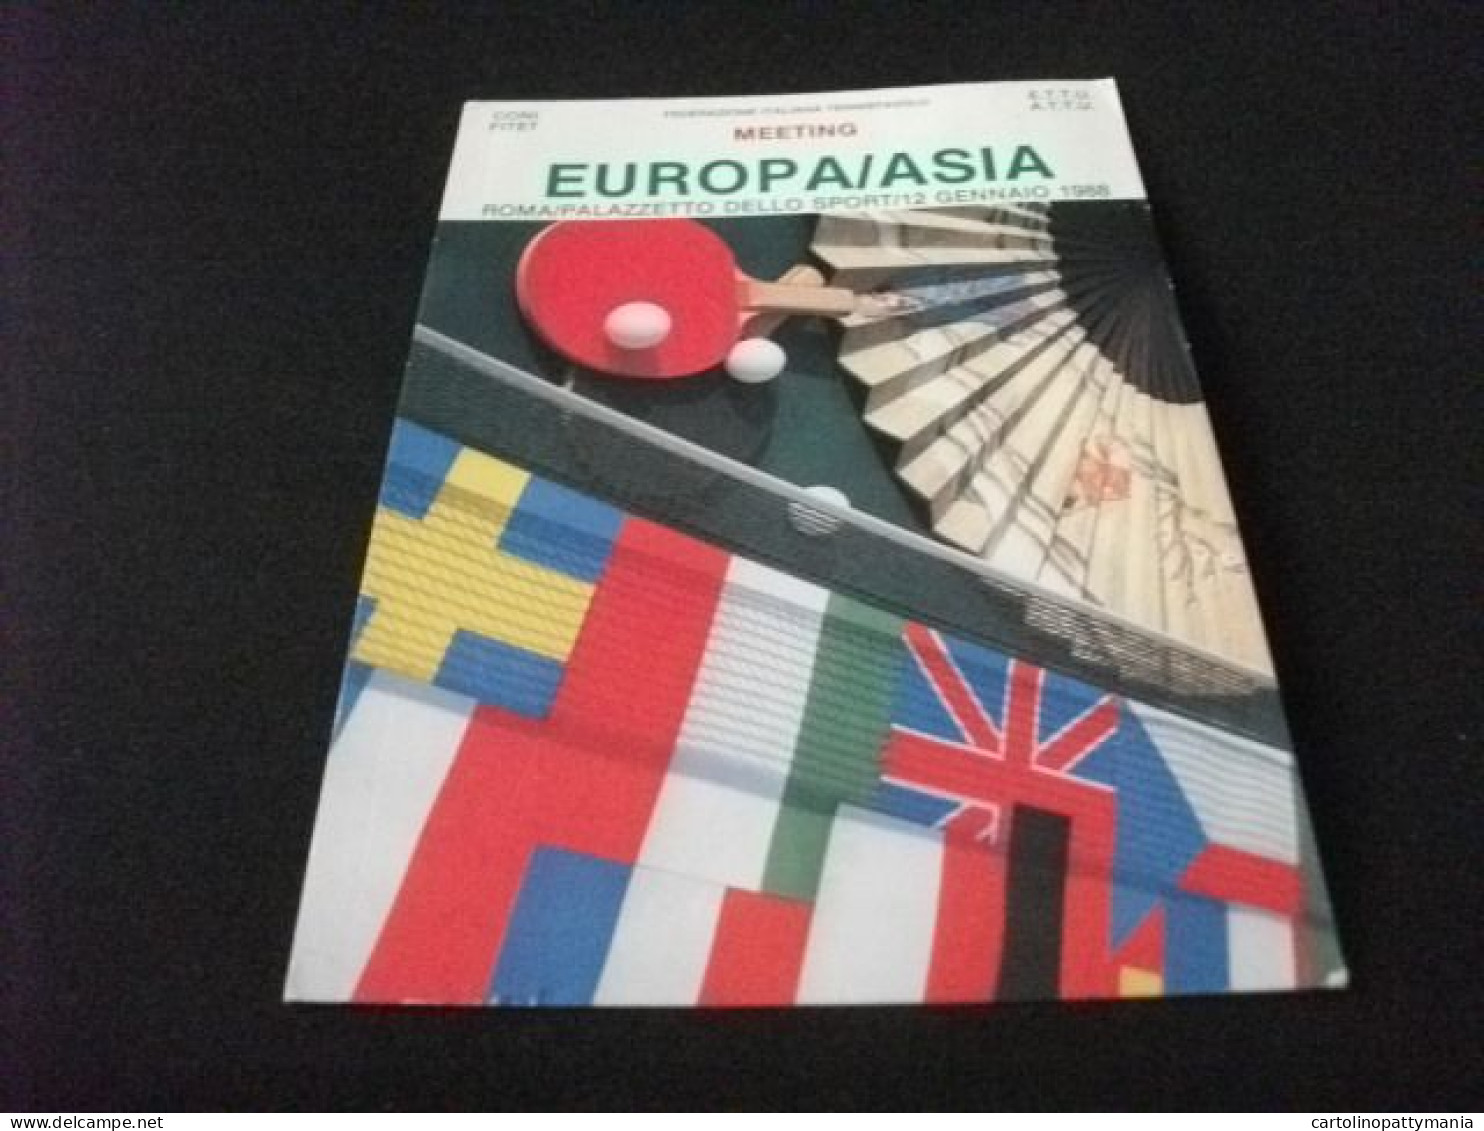 EUROPA/ASIA MEETING ROMA PALAZZETTO DELLO SPORT 1988 TENNIS DA TAVOLO FEDERAZIONE ITALIANA TENNISTAVOLO - Tennis De Table